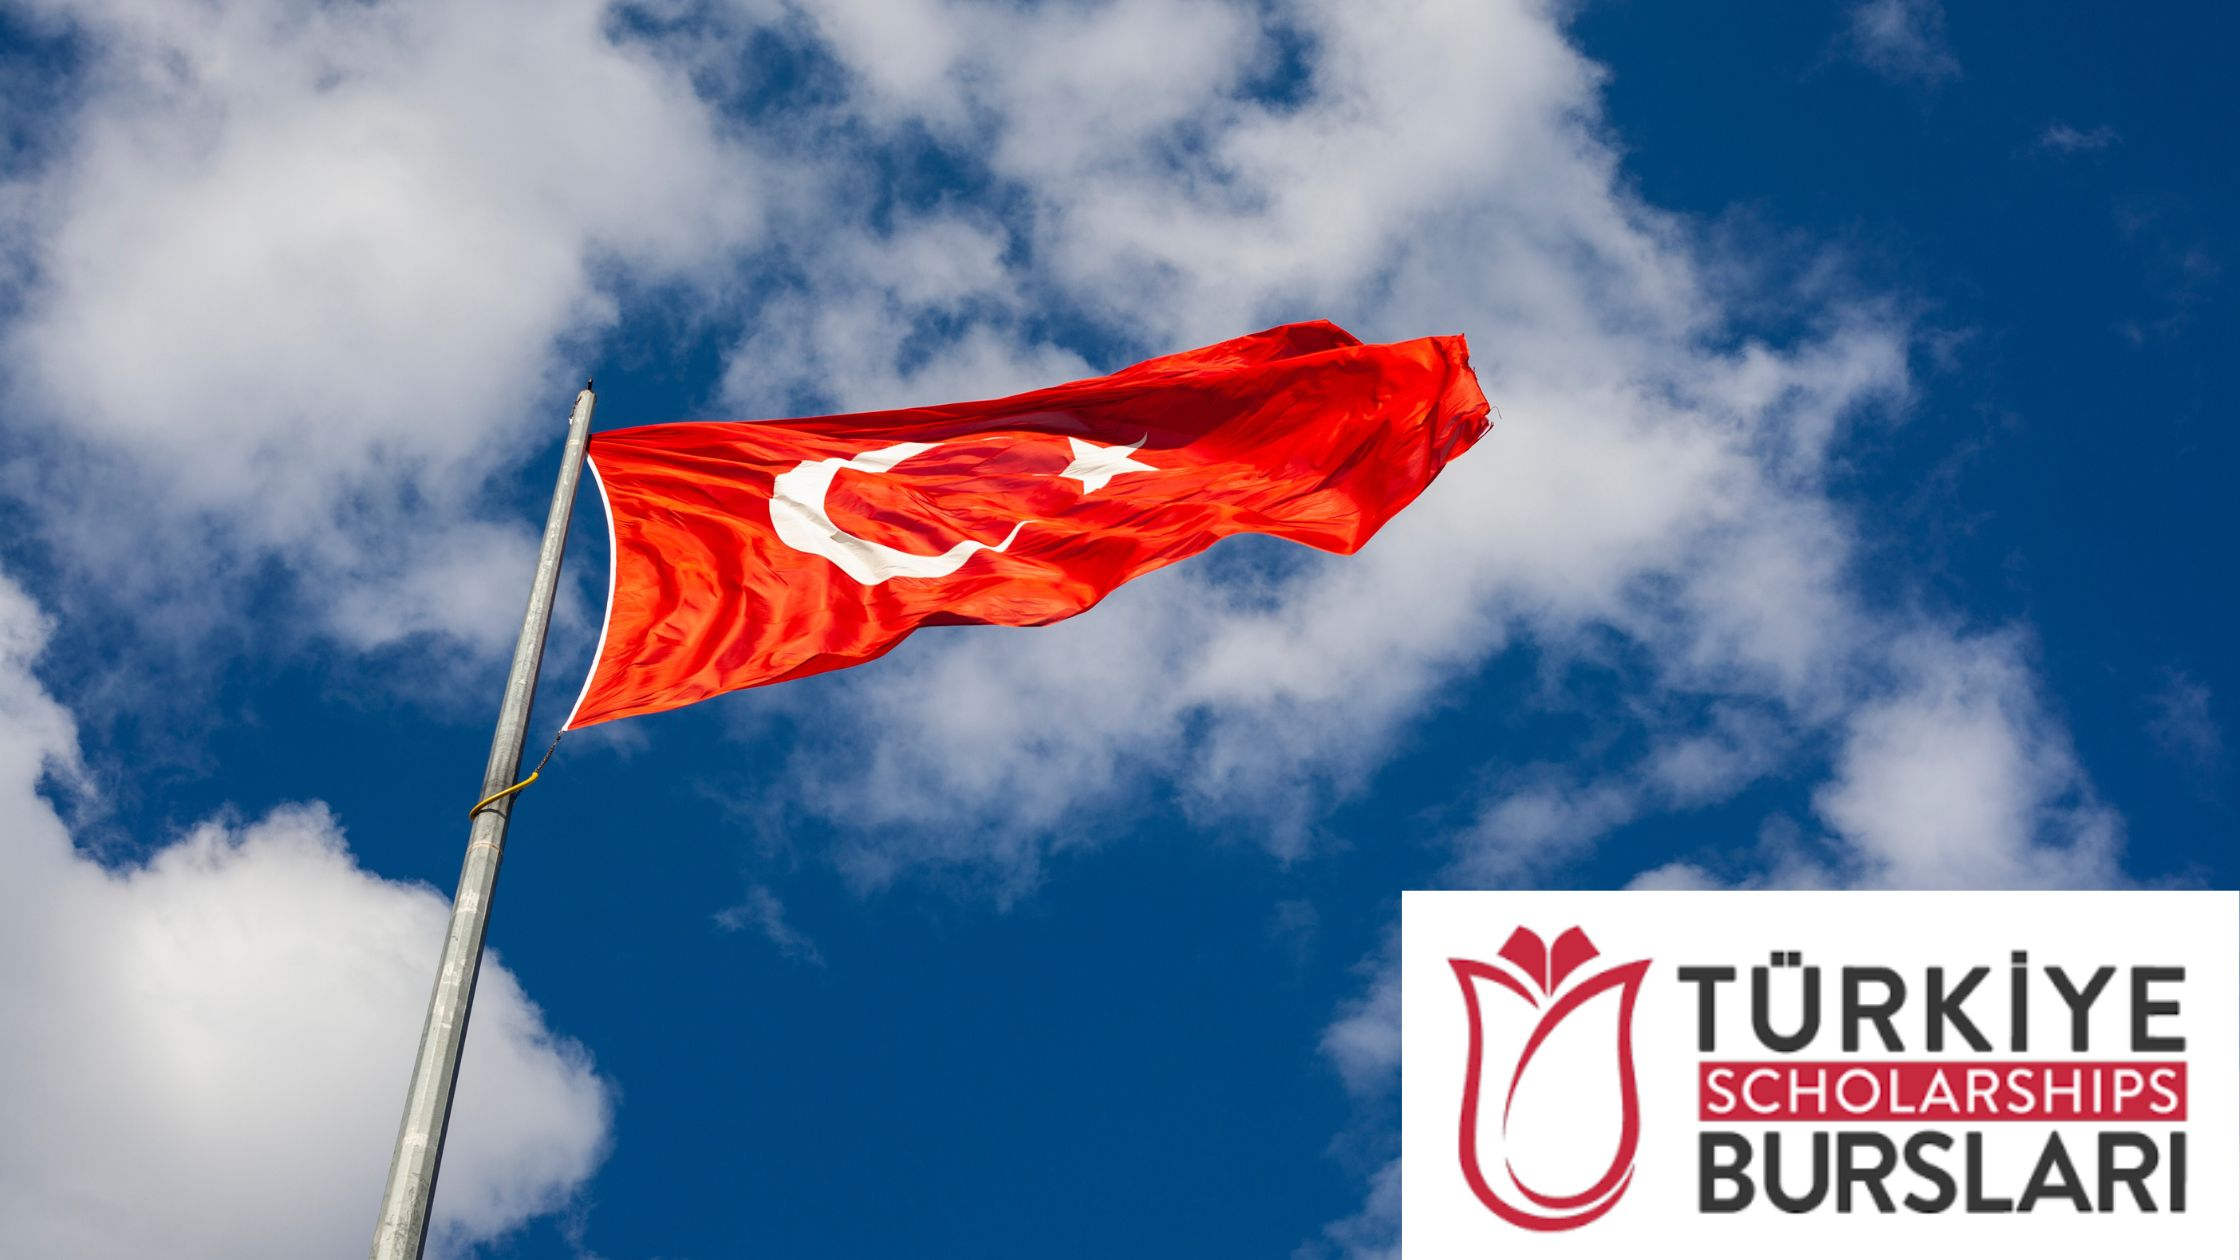 Turkiye Burslari Scholarships